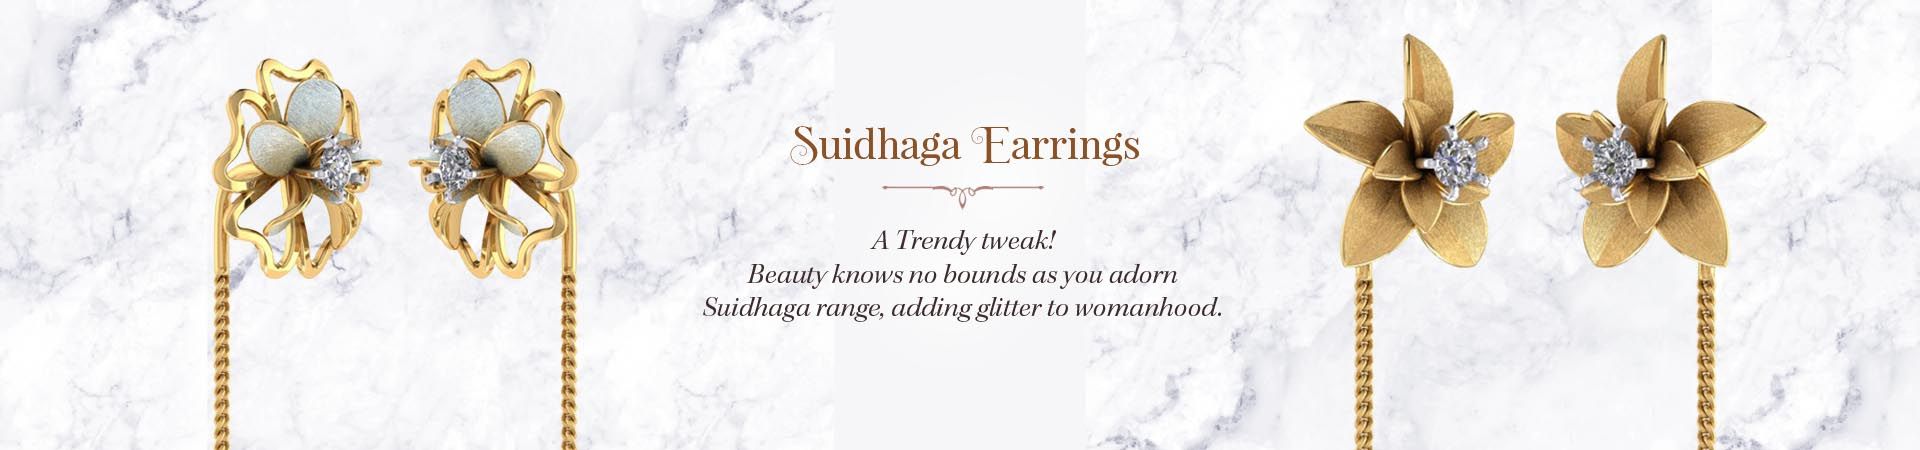 Gold Suidhaga Earrings Online 